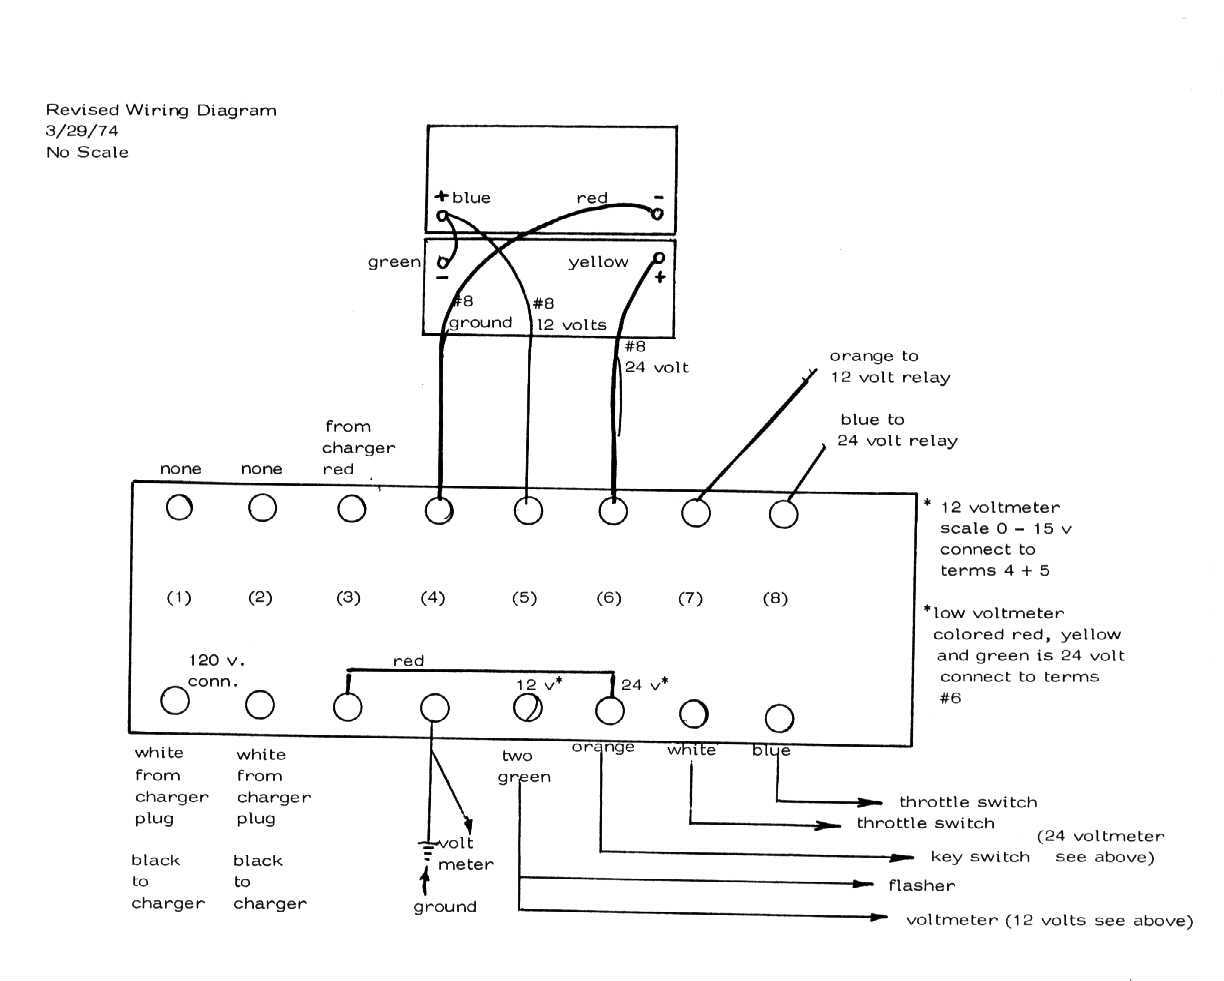 [Image: Terminal Board wiring diagram]